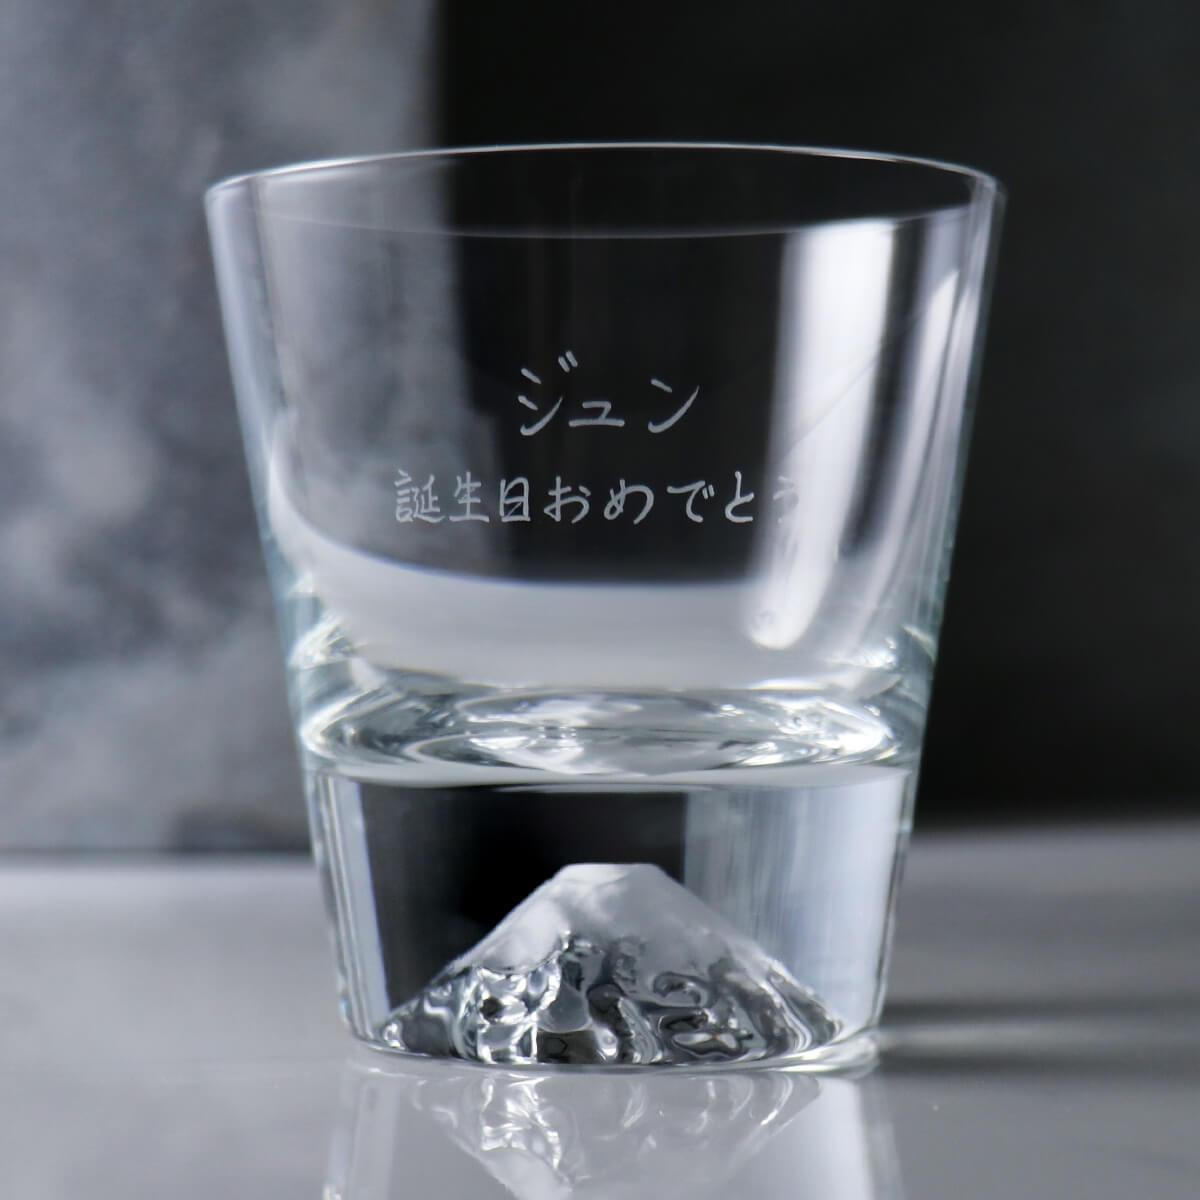 【日本江戶硝子】傳統工藝田島硝子富士山杯グラスの底に、富士山が。Fujiグラス (日本桐箱包裝) - MSA玻璃雕刻